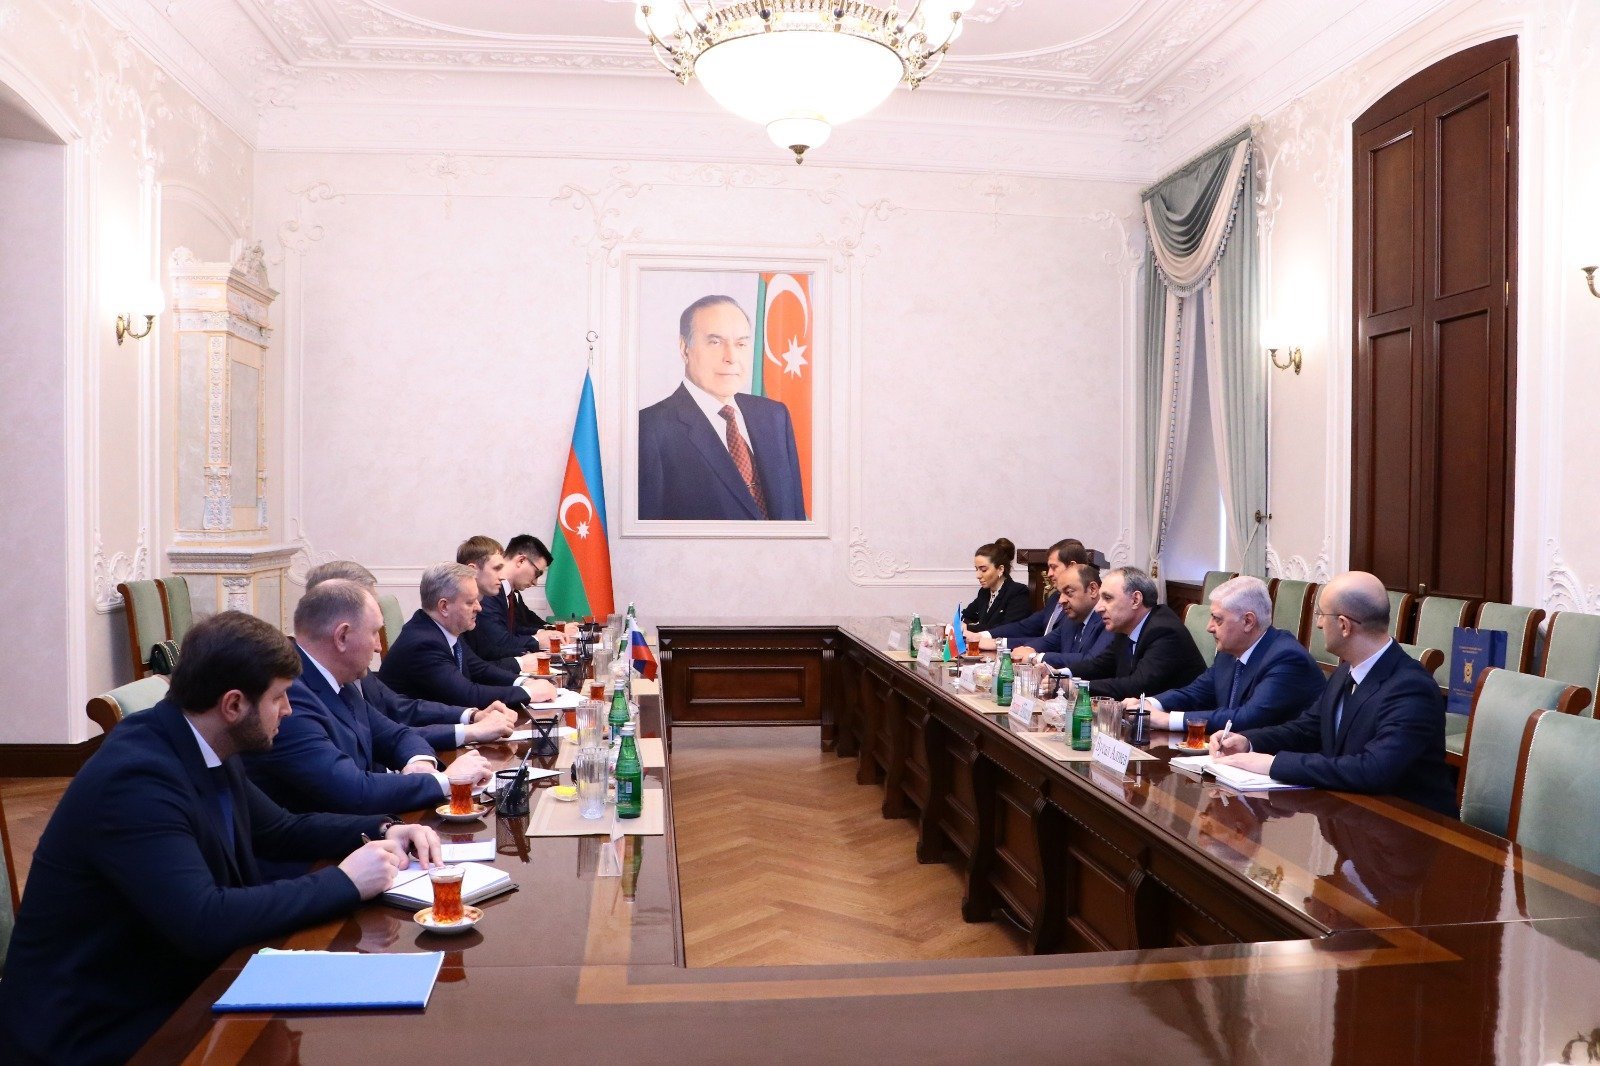 Kamran Əliyev Rusiya Baş prokurorunun müavini ilə görüşüb